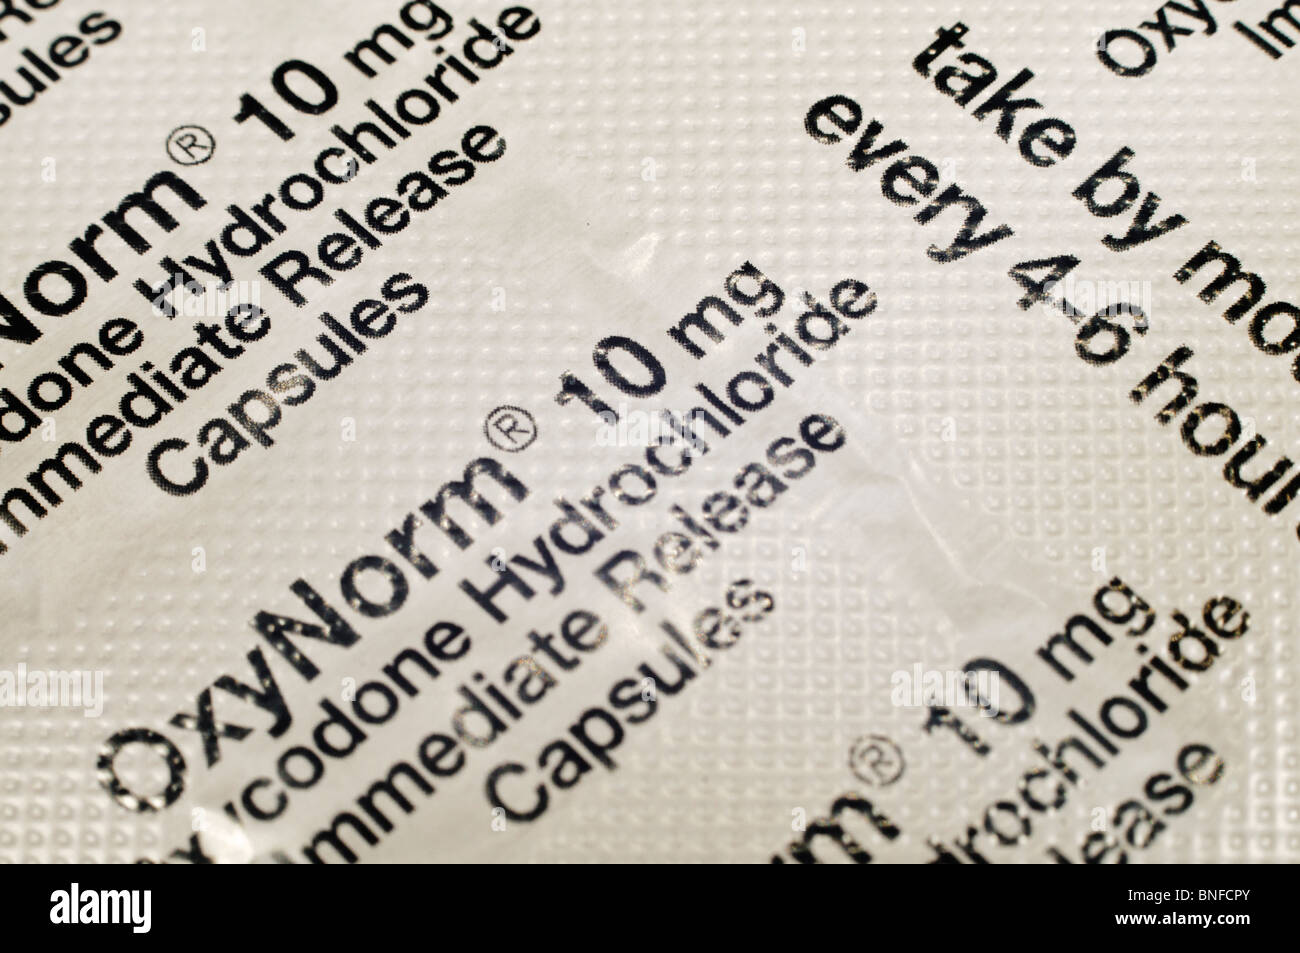 El blister contiene Oxynorm 10mg, un analgésico opioide de morfina/base Foto de stock